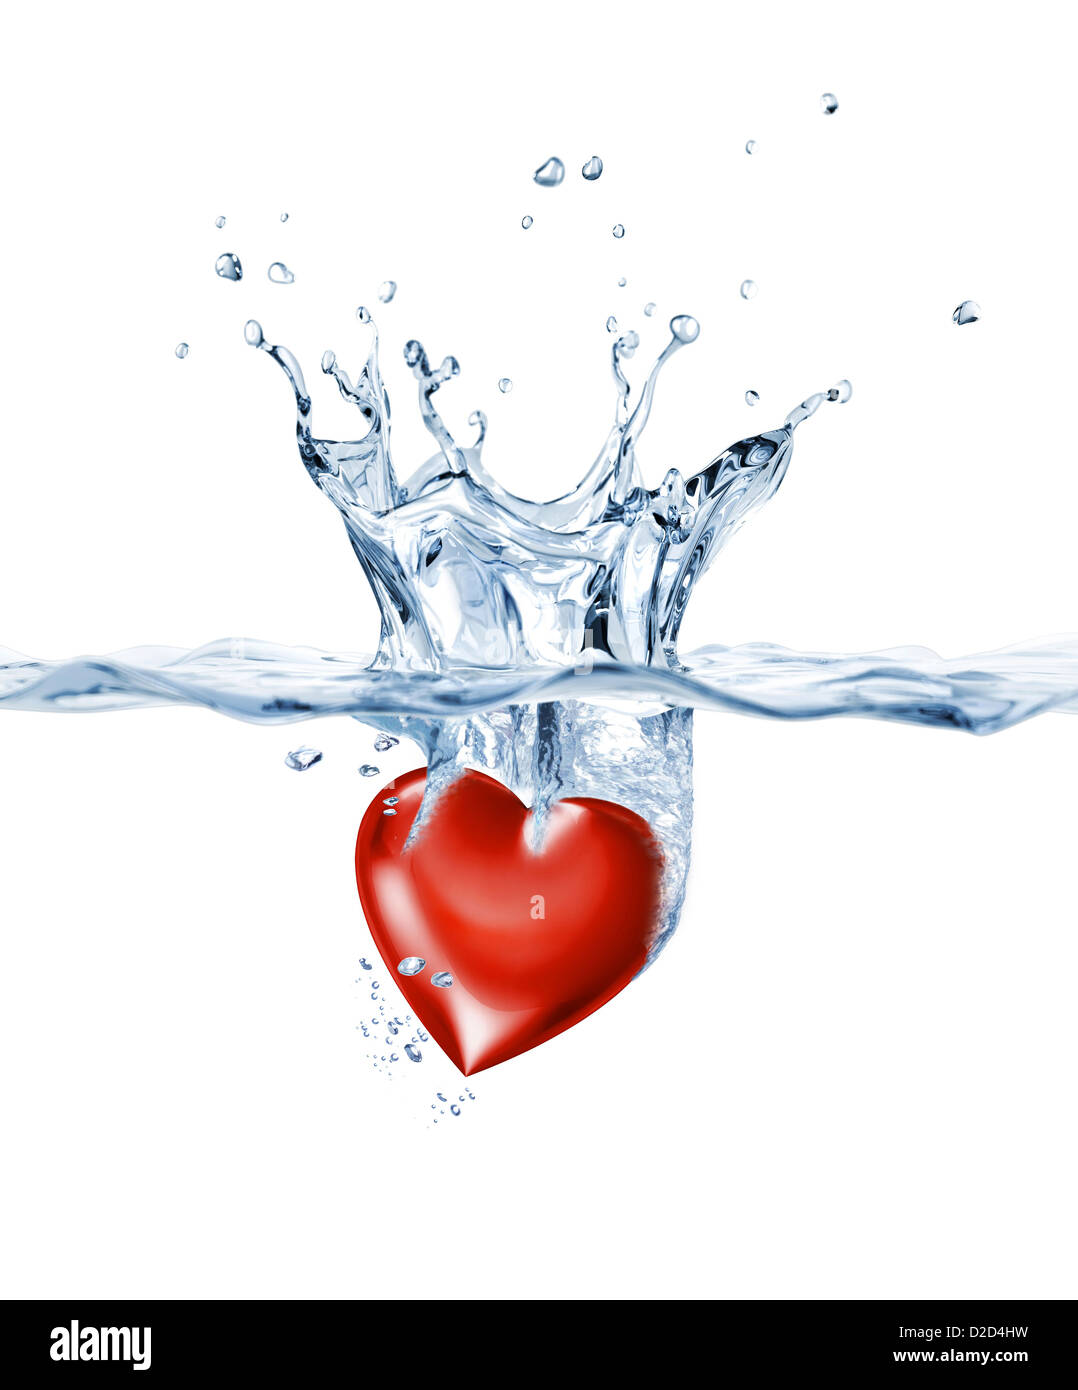 love heart in water